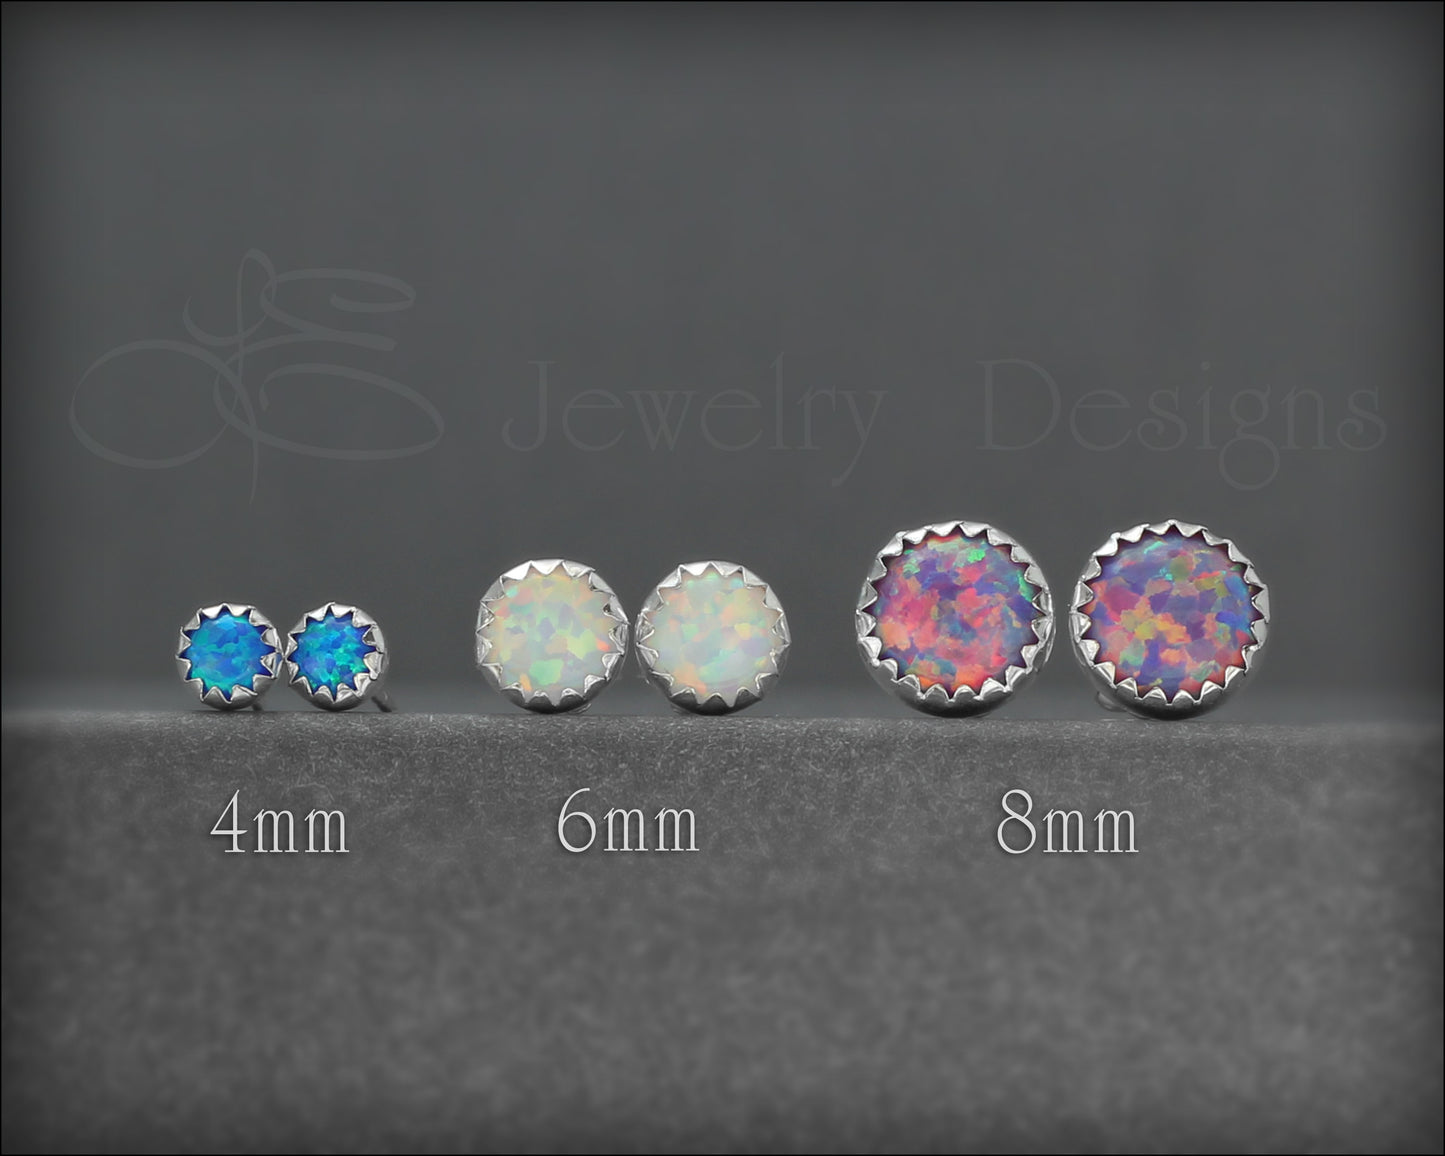 Serrated Opal Stud Earrings (choose size) - LE Jewelry Designs